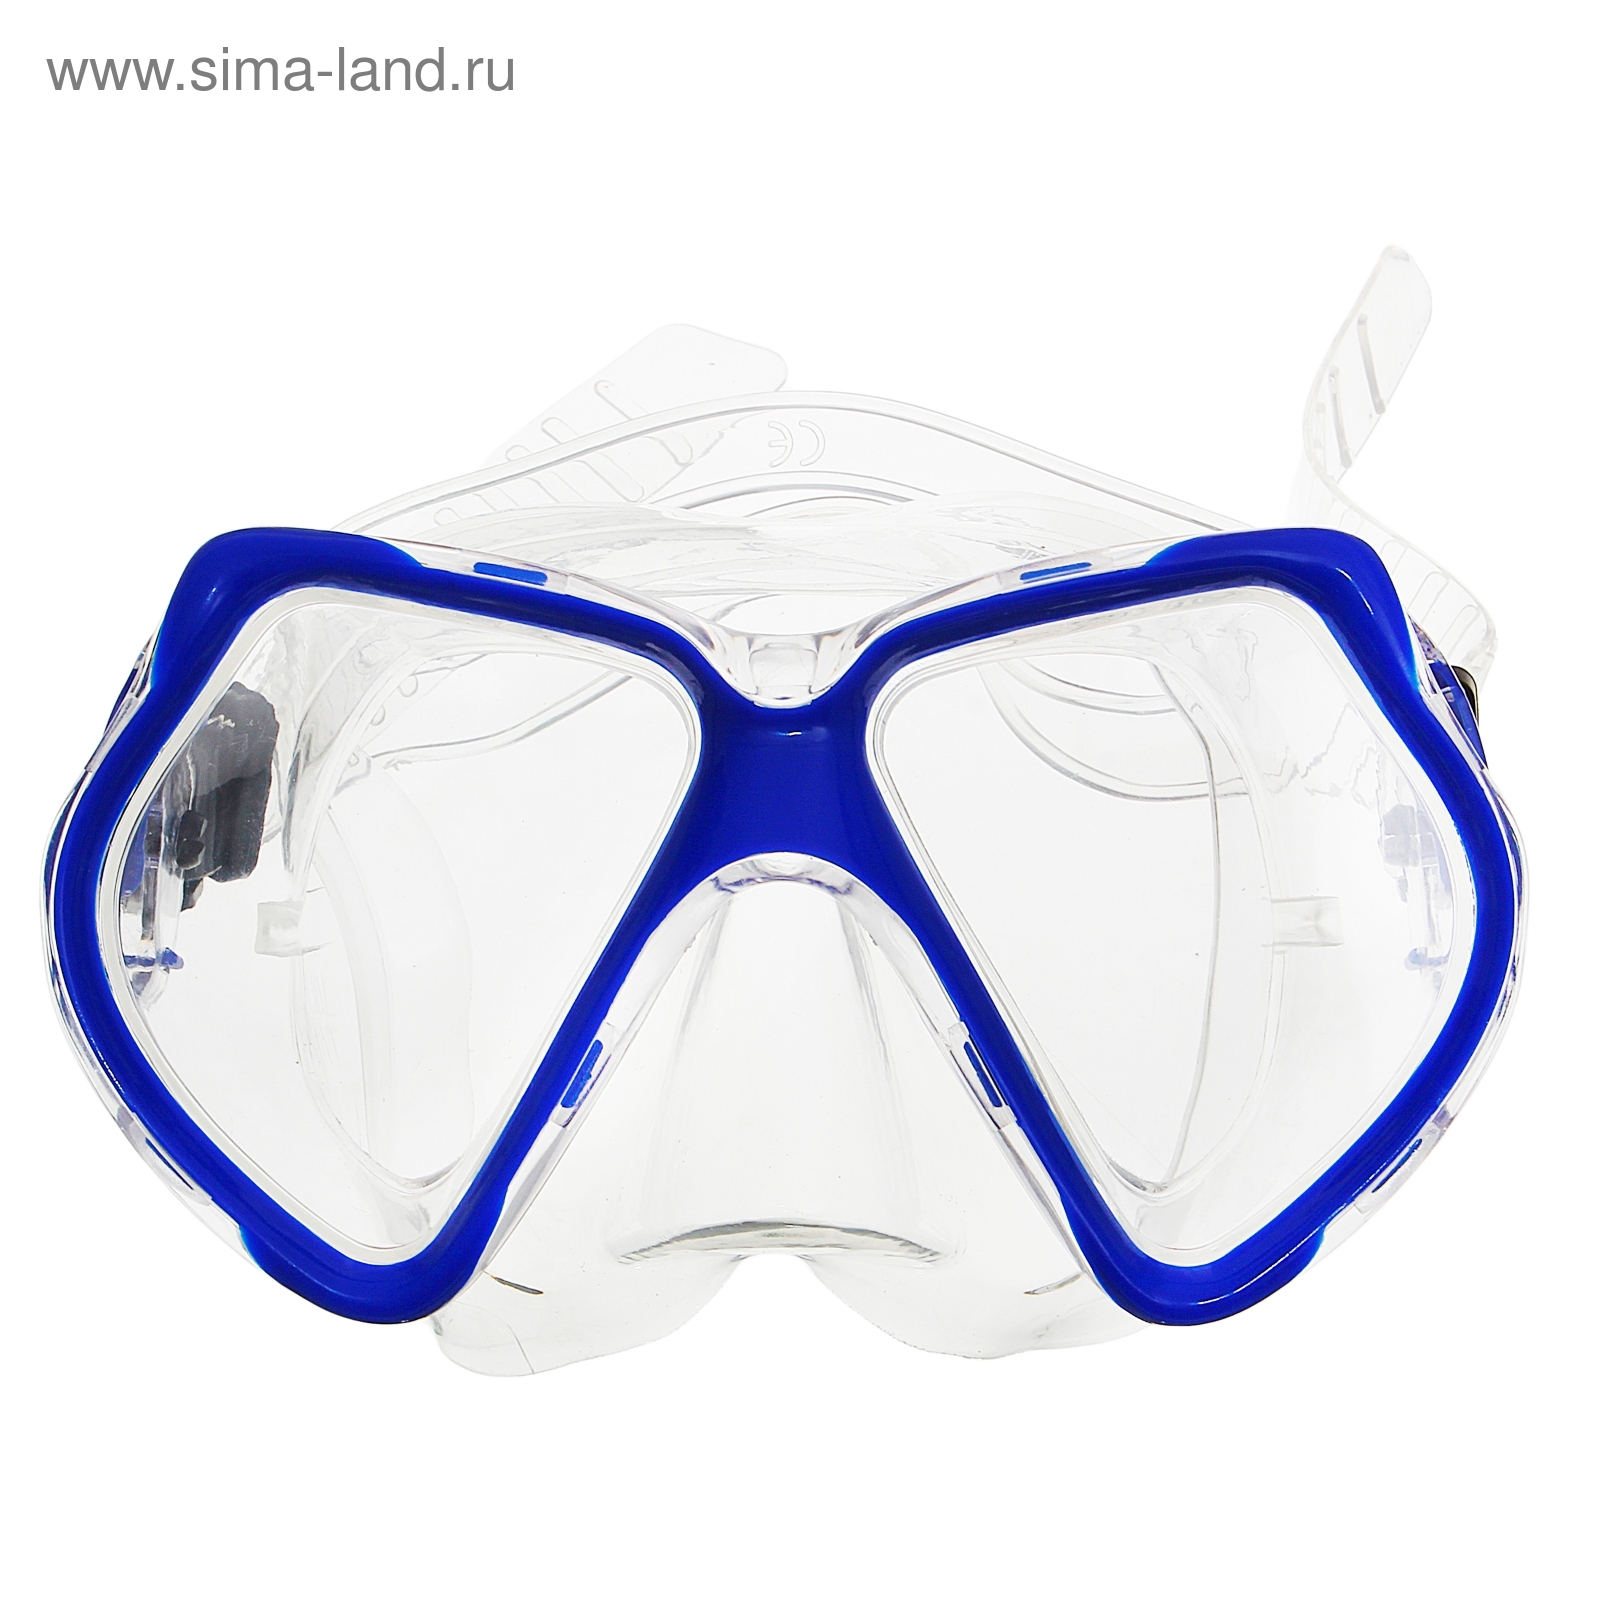 Маска для плавания москва. Маска для подводного плавания dovod арт. M6231s. E33135-2 маска для плавания взрослая (ПВХ) (синяя). Детская маска для плавания. Маски подводные для детей.